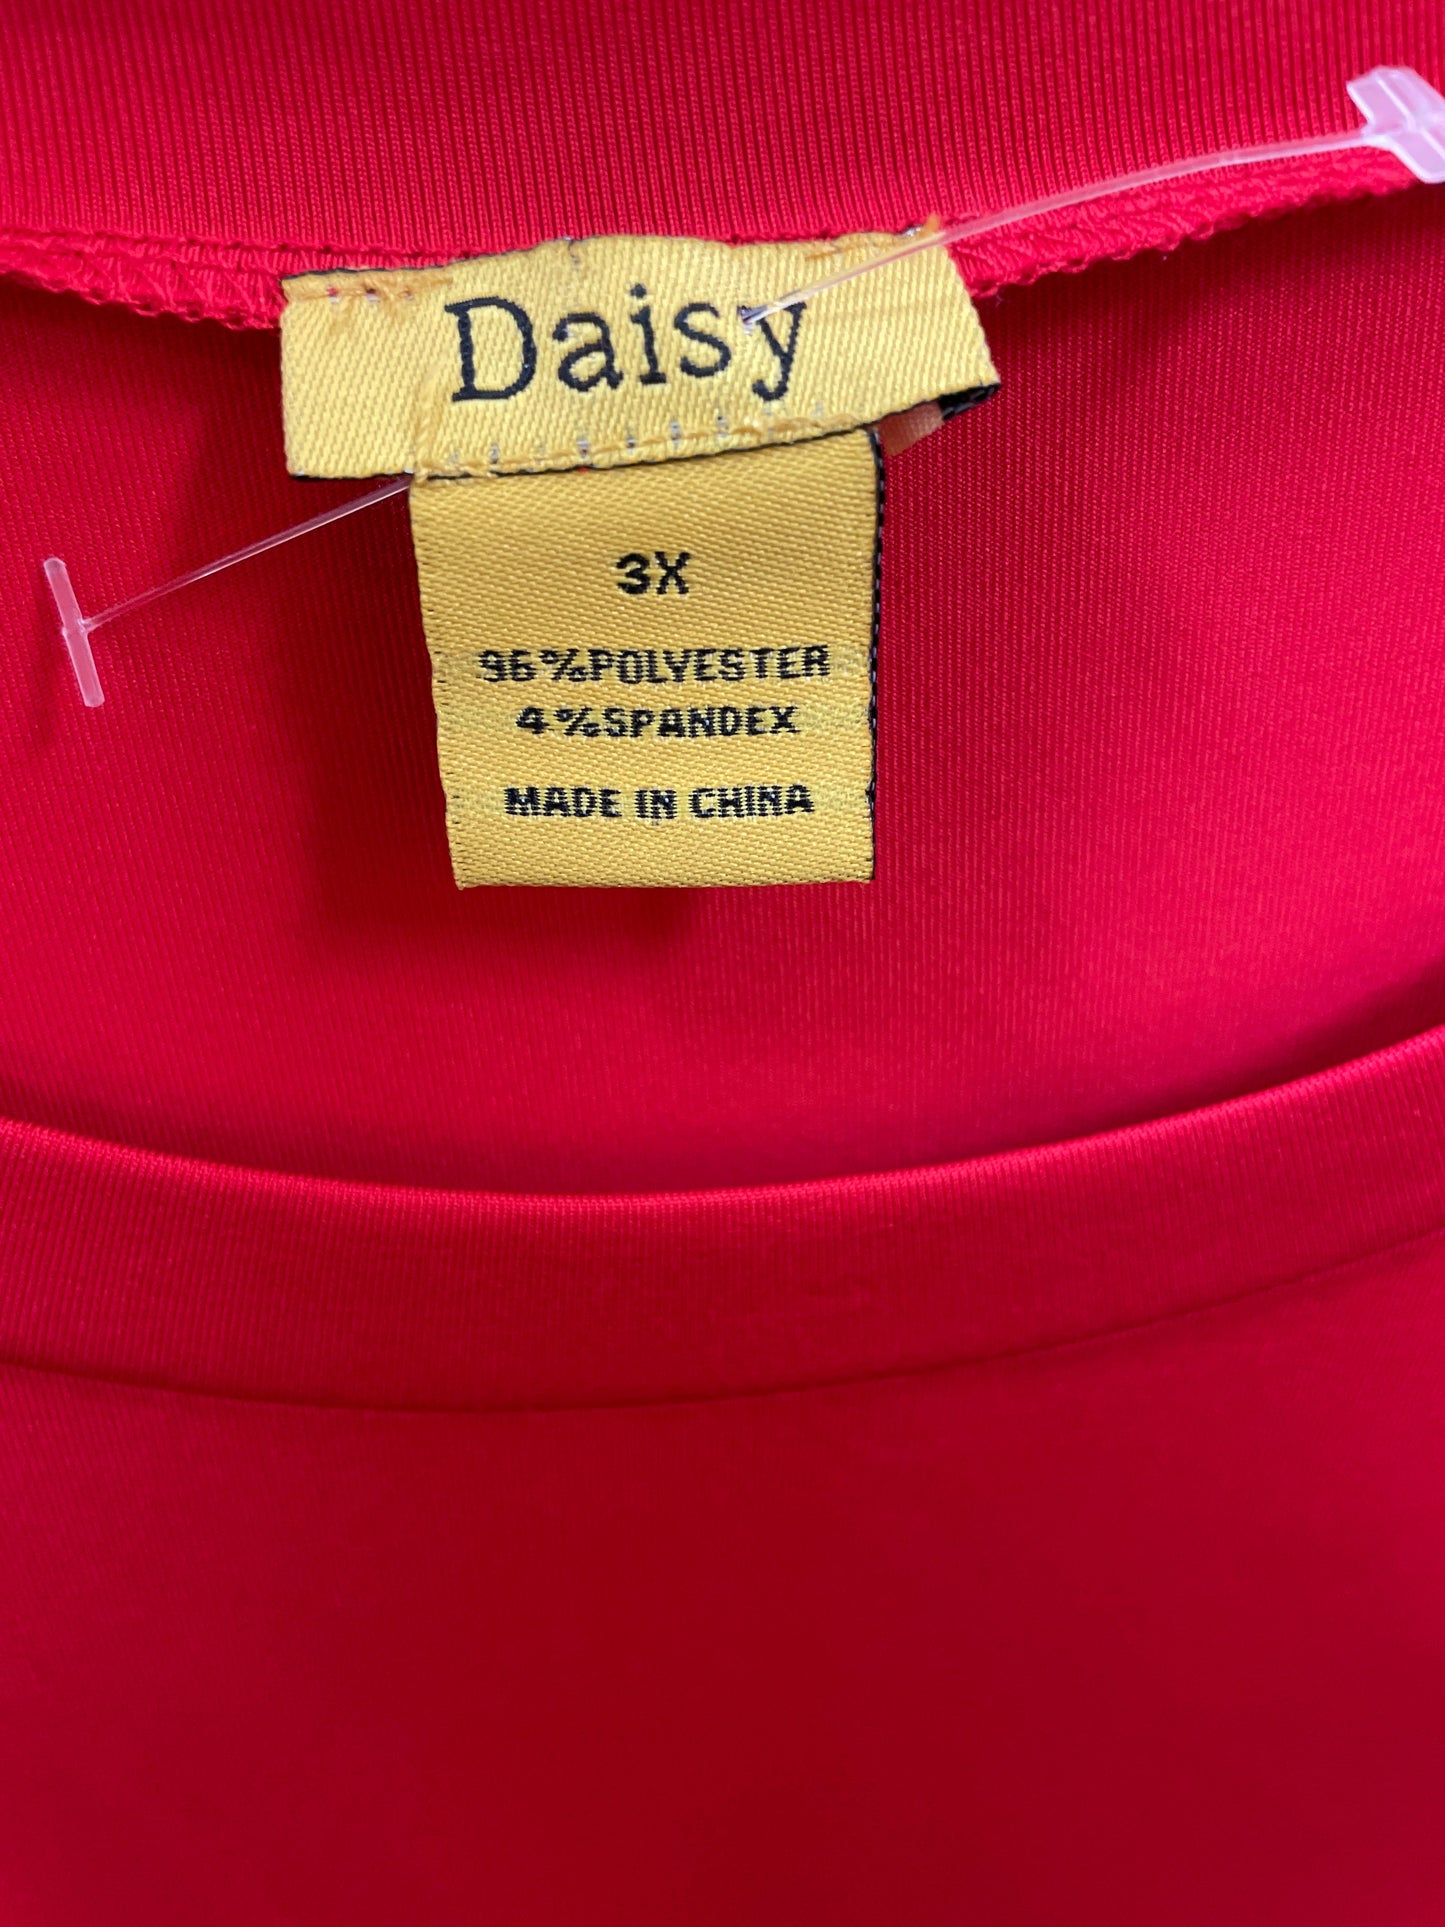 Red Bodysuit By Daisy Size: 3x